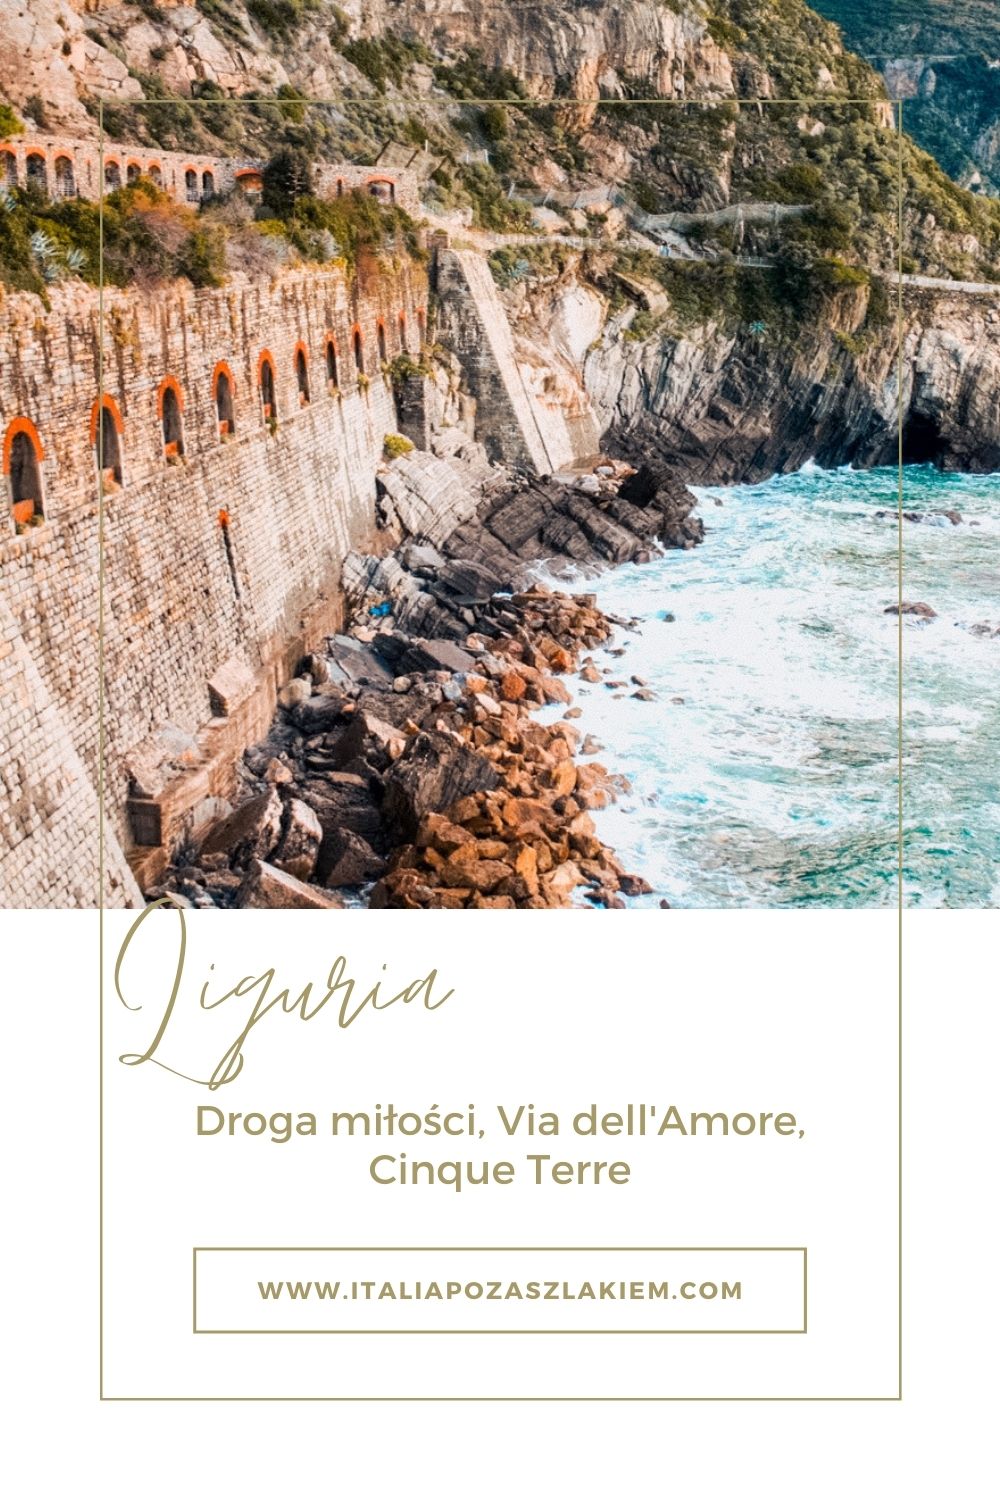 Cinque Terre, Via dell'Amore, Liguria